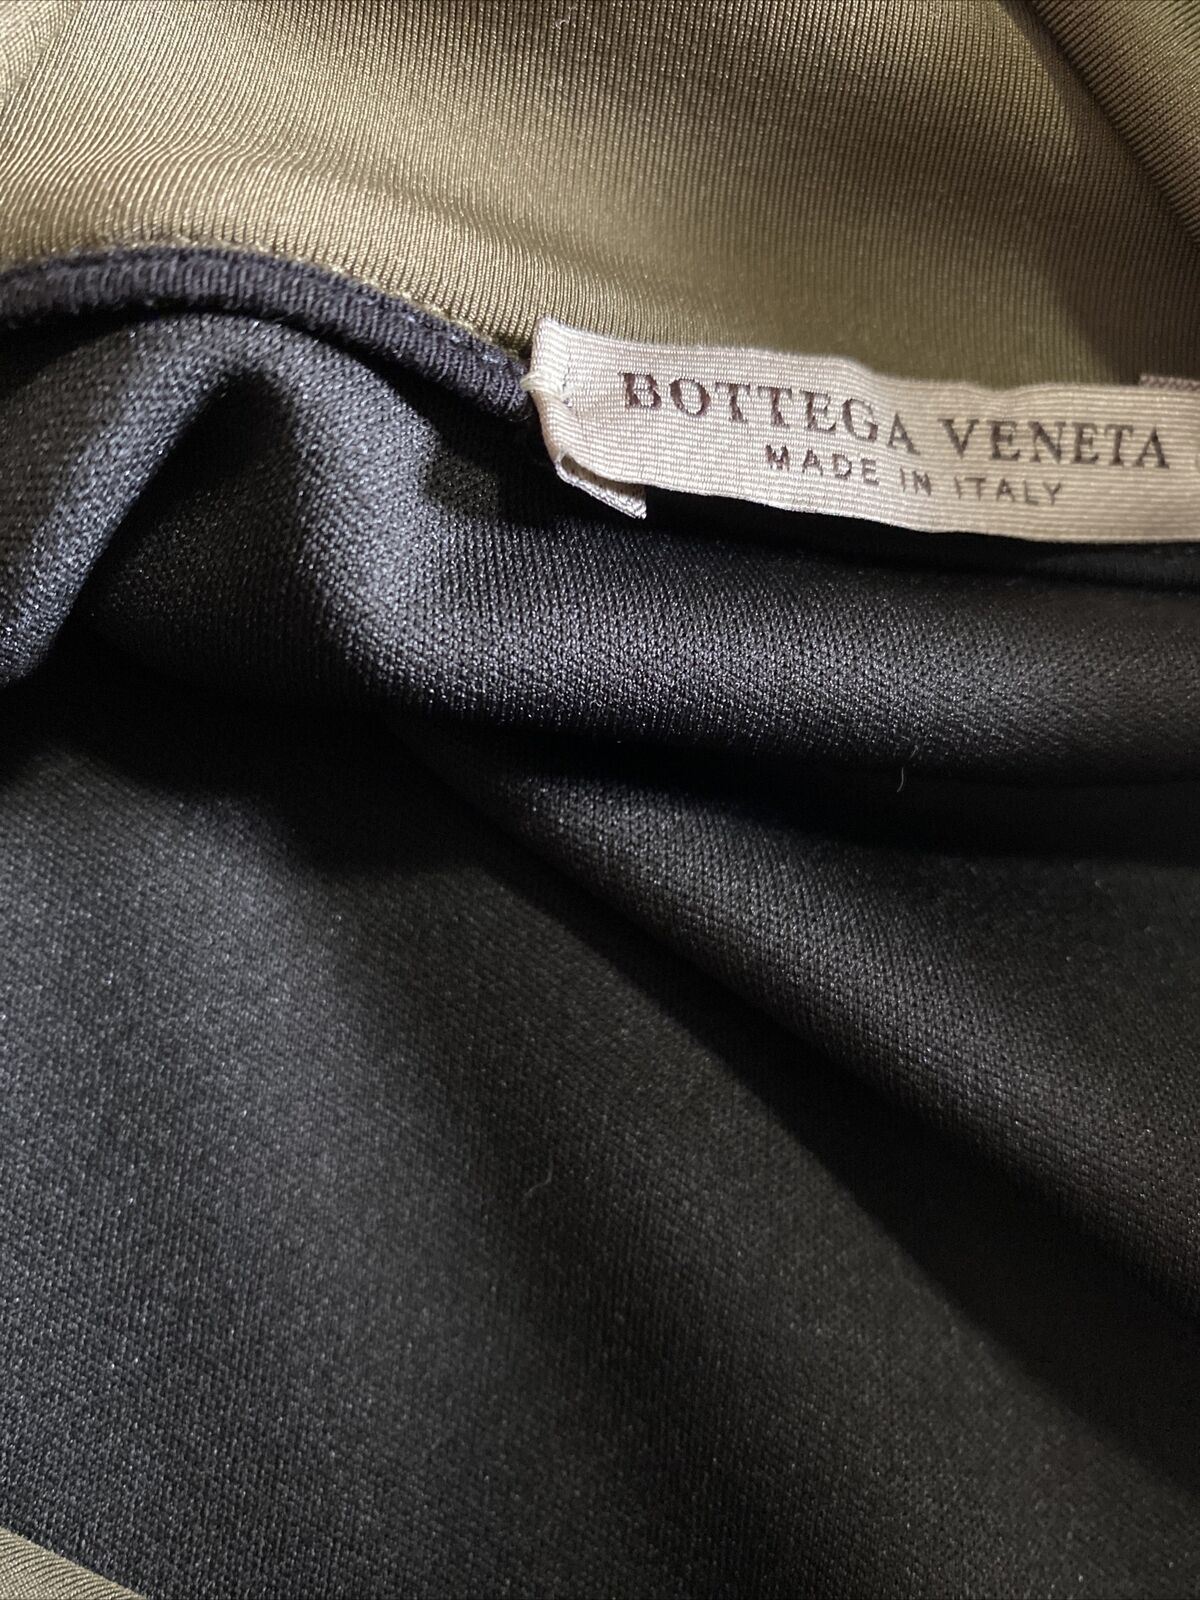 Neu mit Etikett: 820 $ Bottega Veneta Herrenpullover Bonded Sweat Jersey Braun 36 US/46 Eu